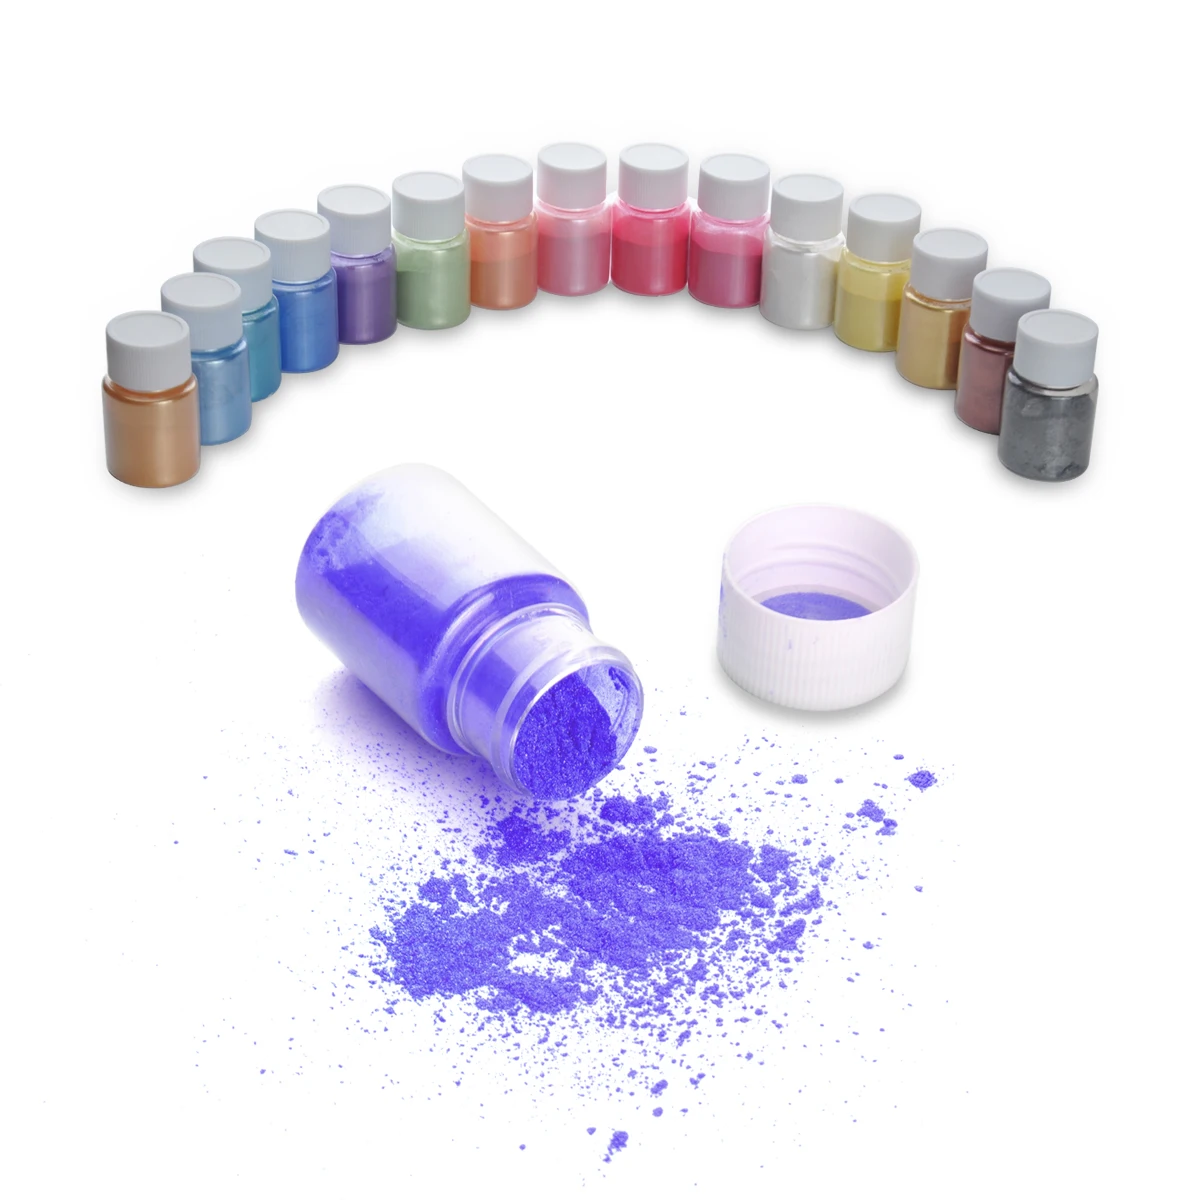 15 цветов для мыловарения/мыло красители/Нейл-арт/тени для век DIY слюдяной порошковый пигмент комплект поставки порошок смола в бутылке